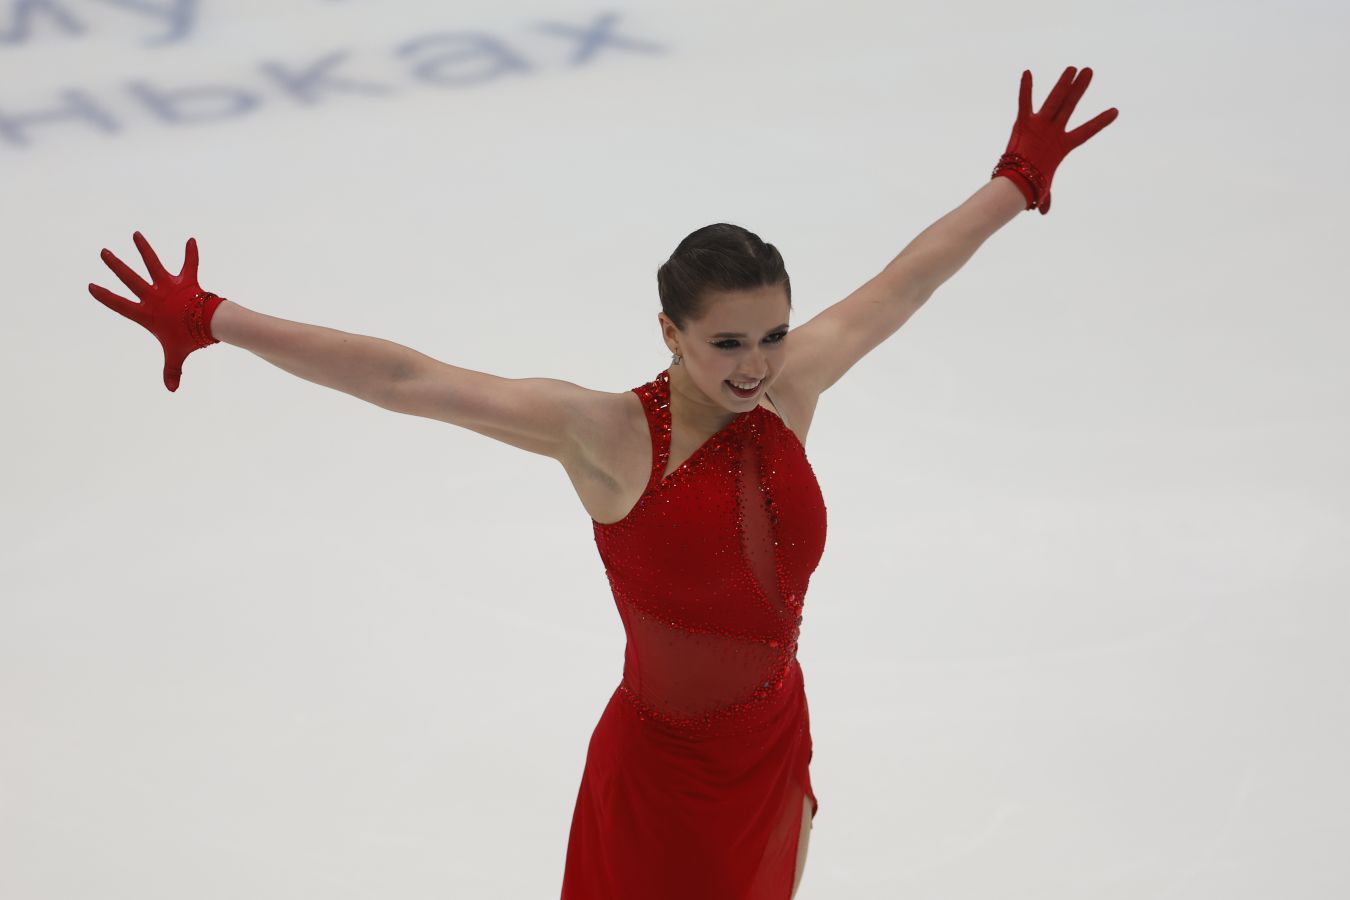 Камила Валиева впервые заявлена на ледовое шоу после новости о дисквалификации за допинг